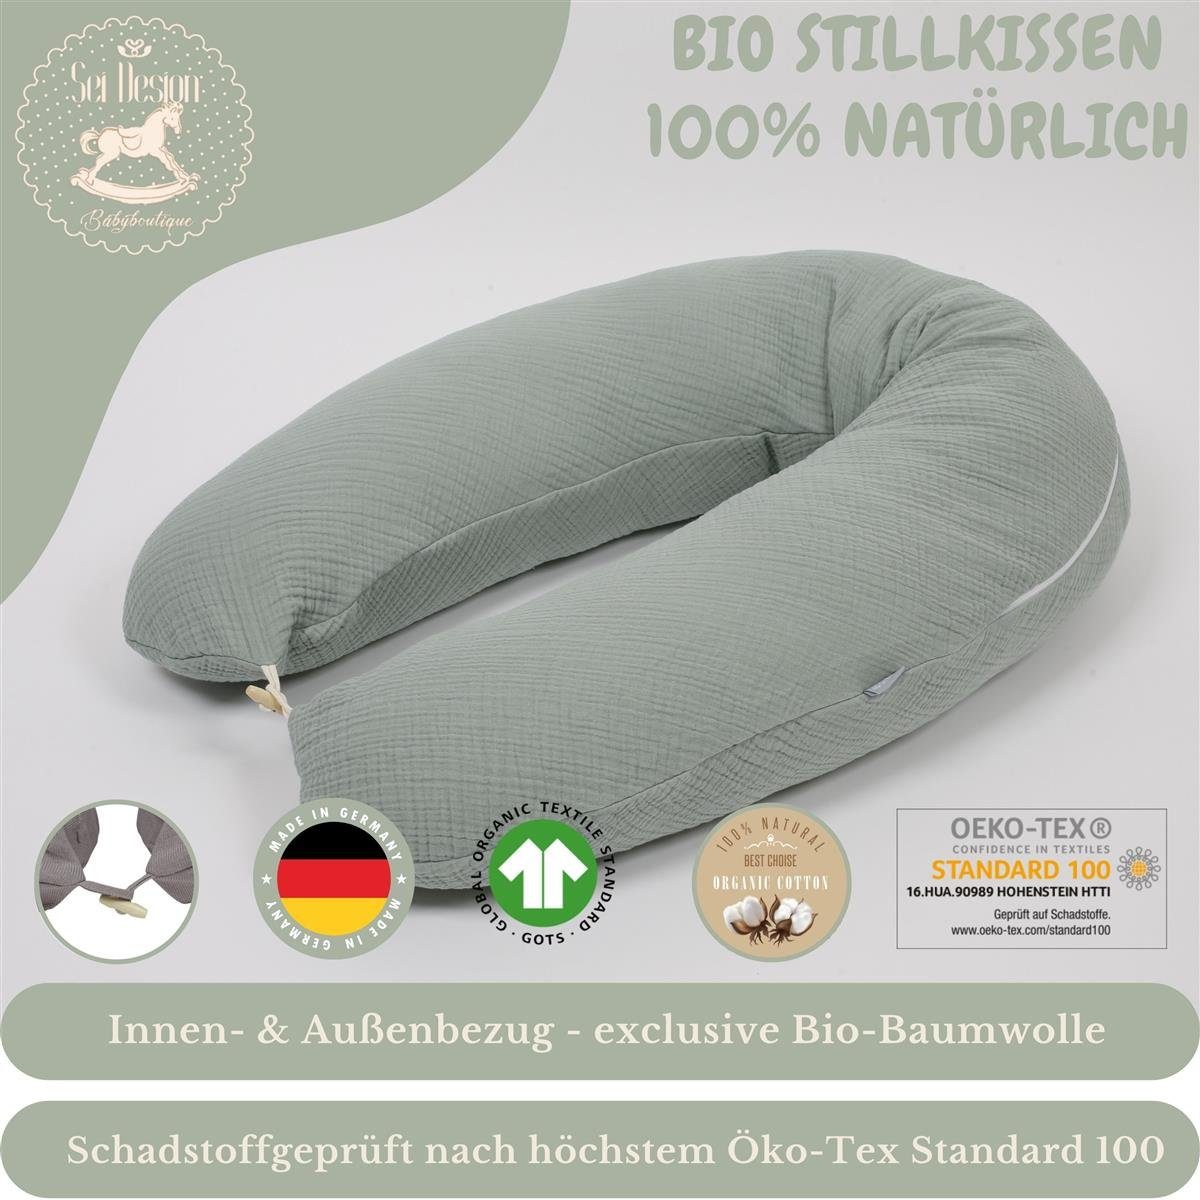 SEI Design Stillkissen BIO-Stillkissen Naturstillkissen cm, 190x30 Kapok Kissen + Dark Mint Baumwolle + BIO Bezug